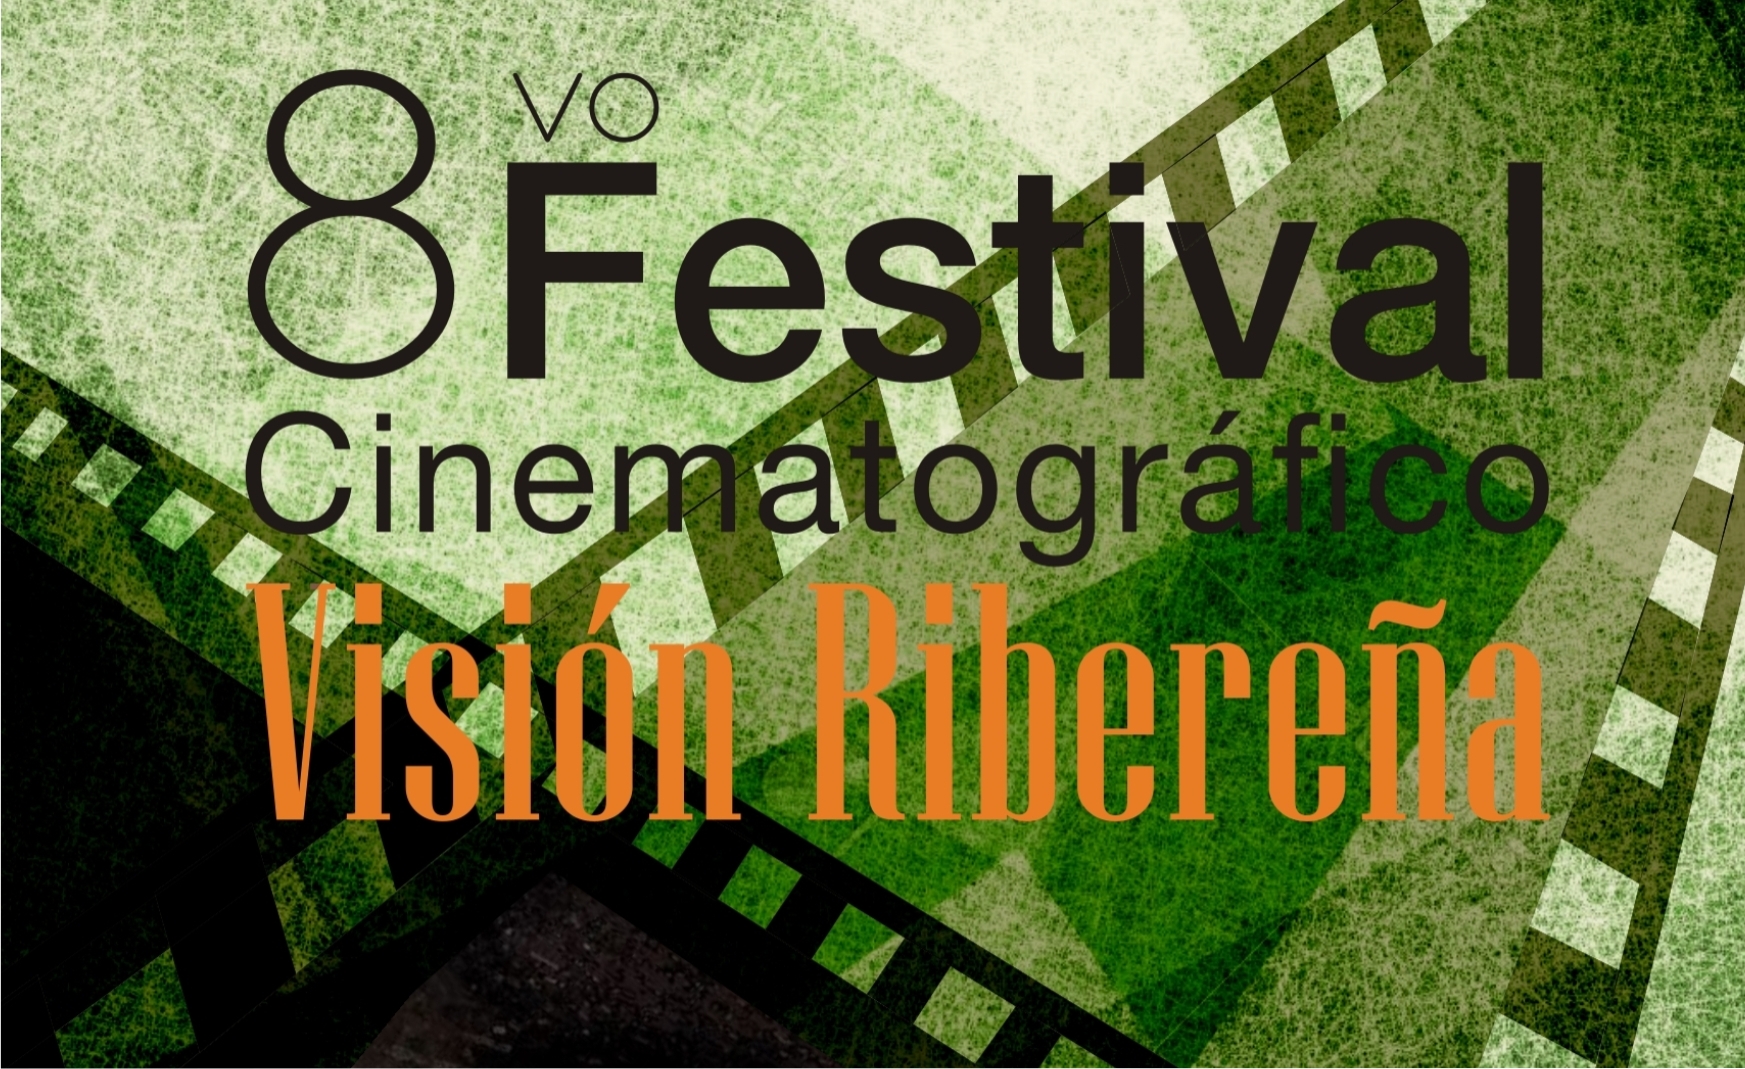 8vo Festival Cinematográfico Visión Ribereña